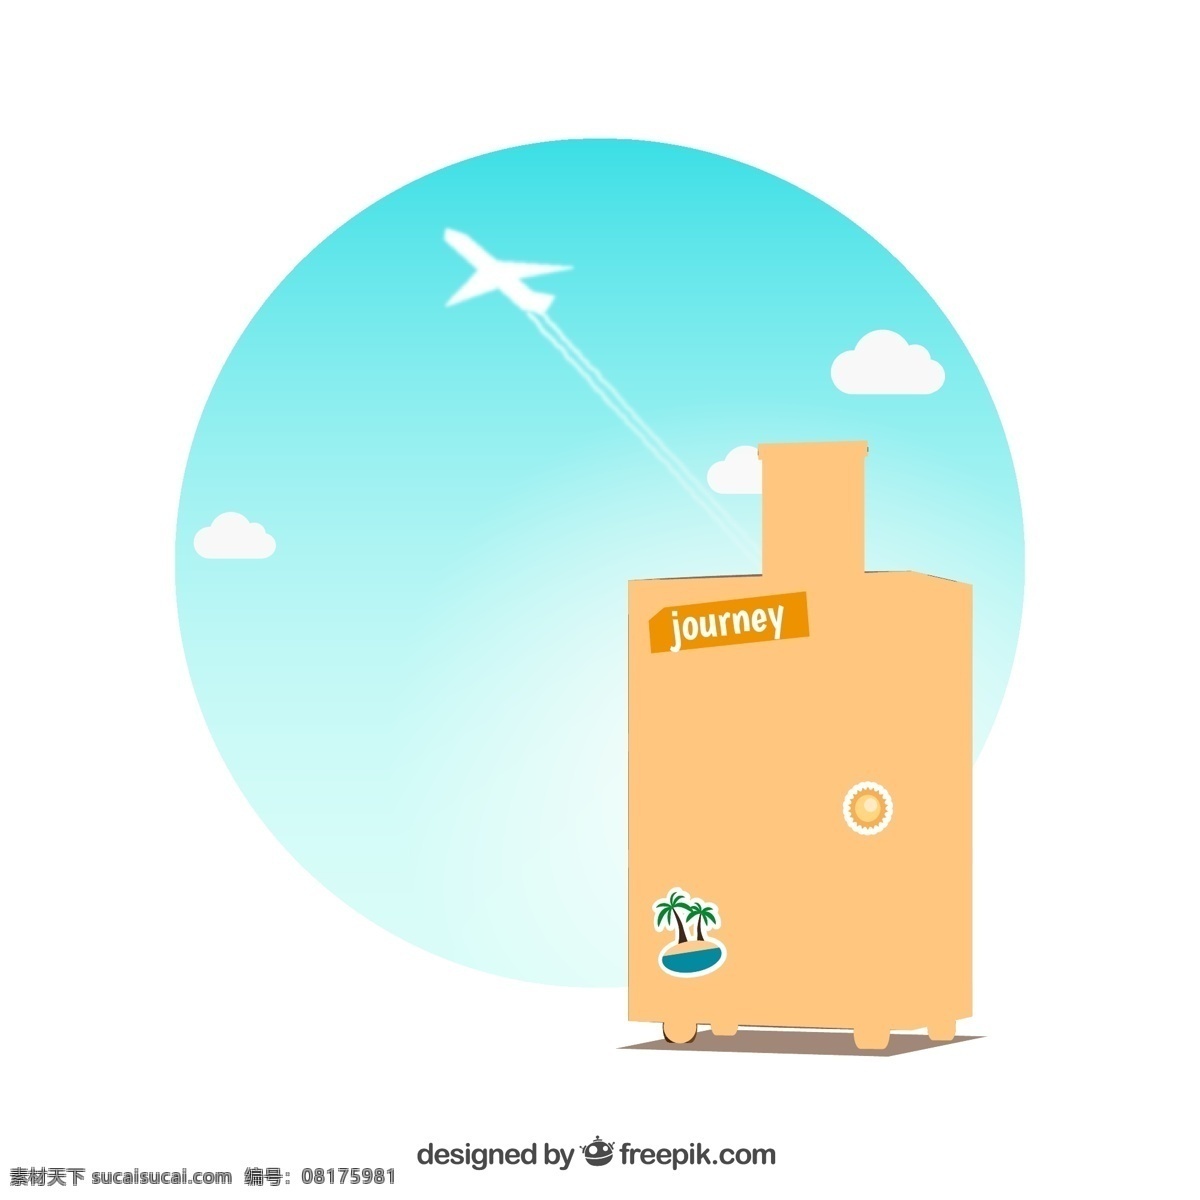 创意 旅行箱 插画 矢量图 飞机 轨迹 天空 云朵 旅行 行李箱 度假